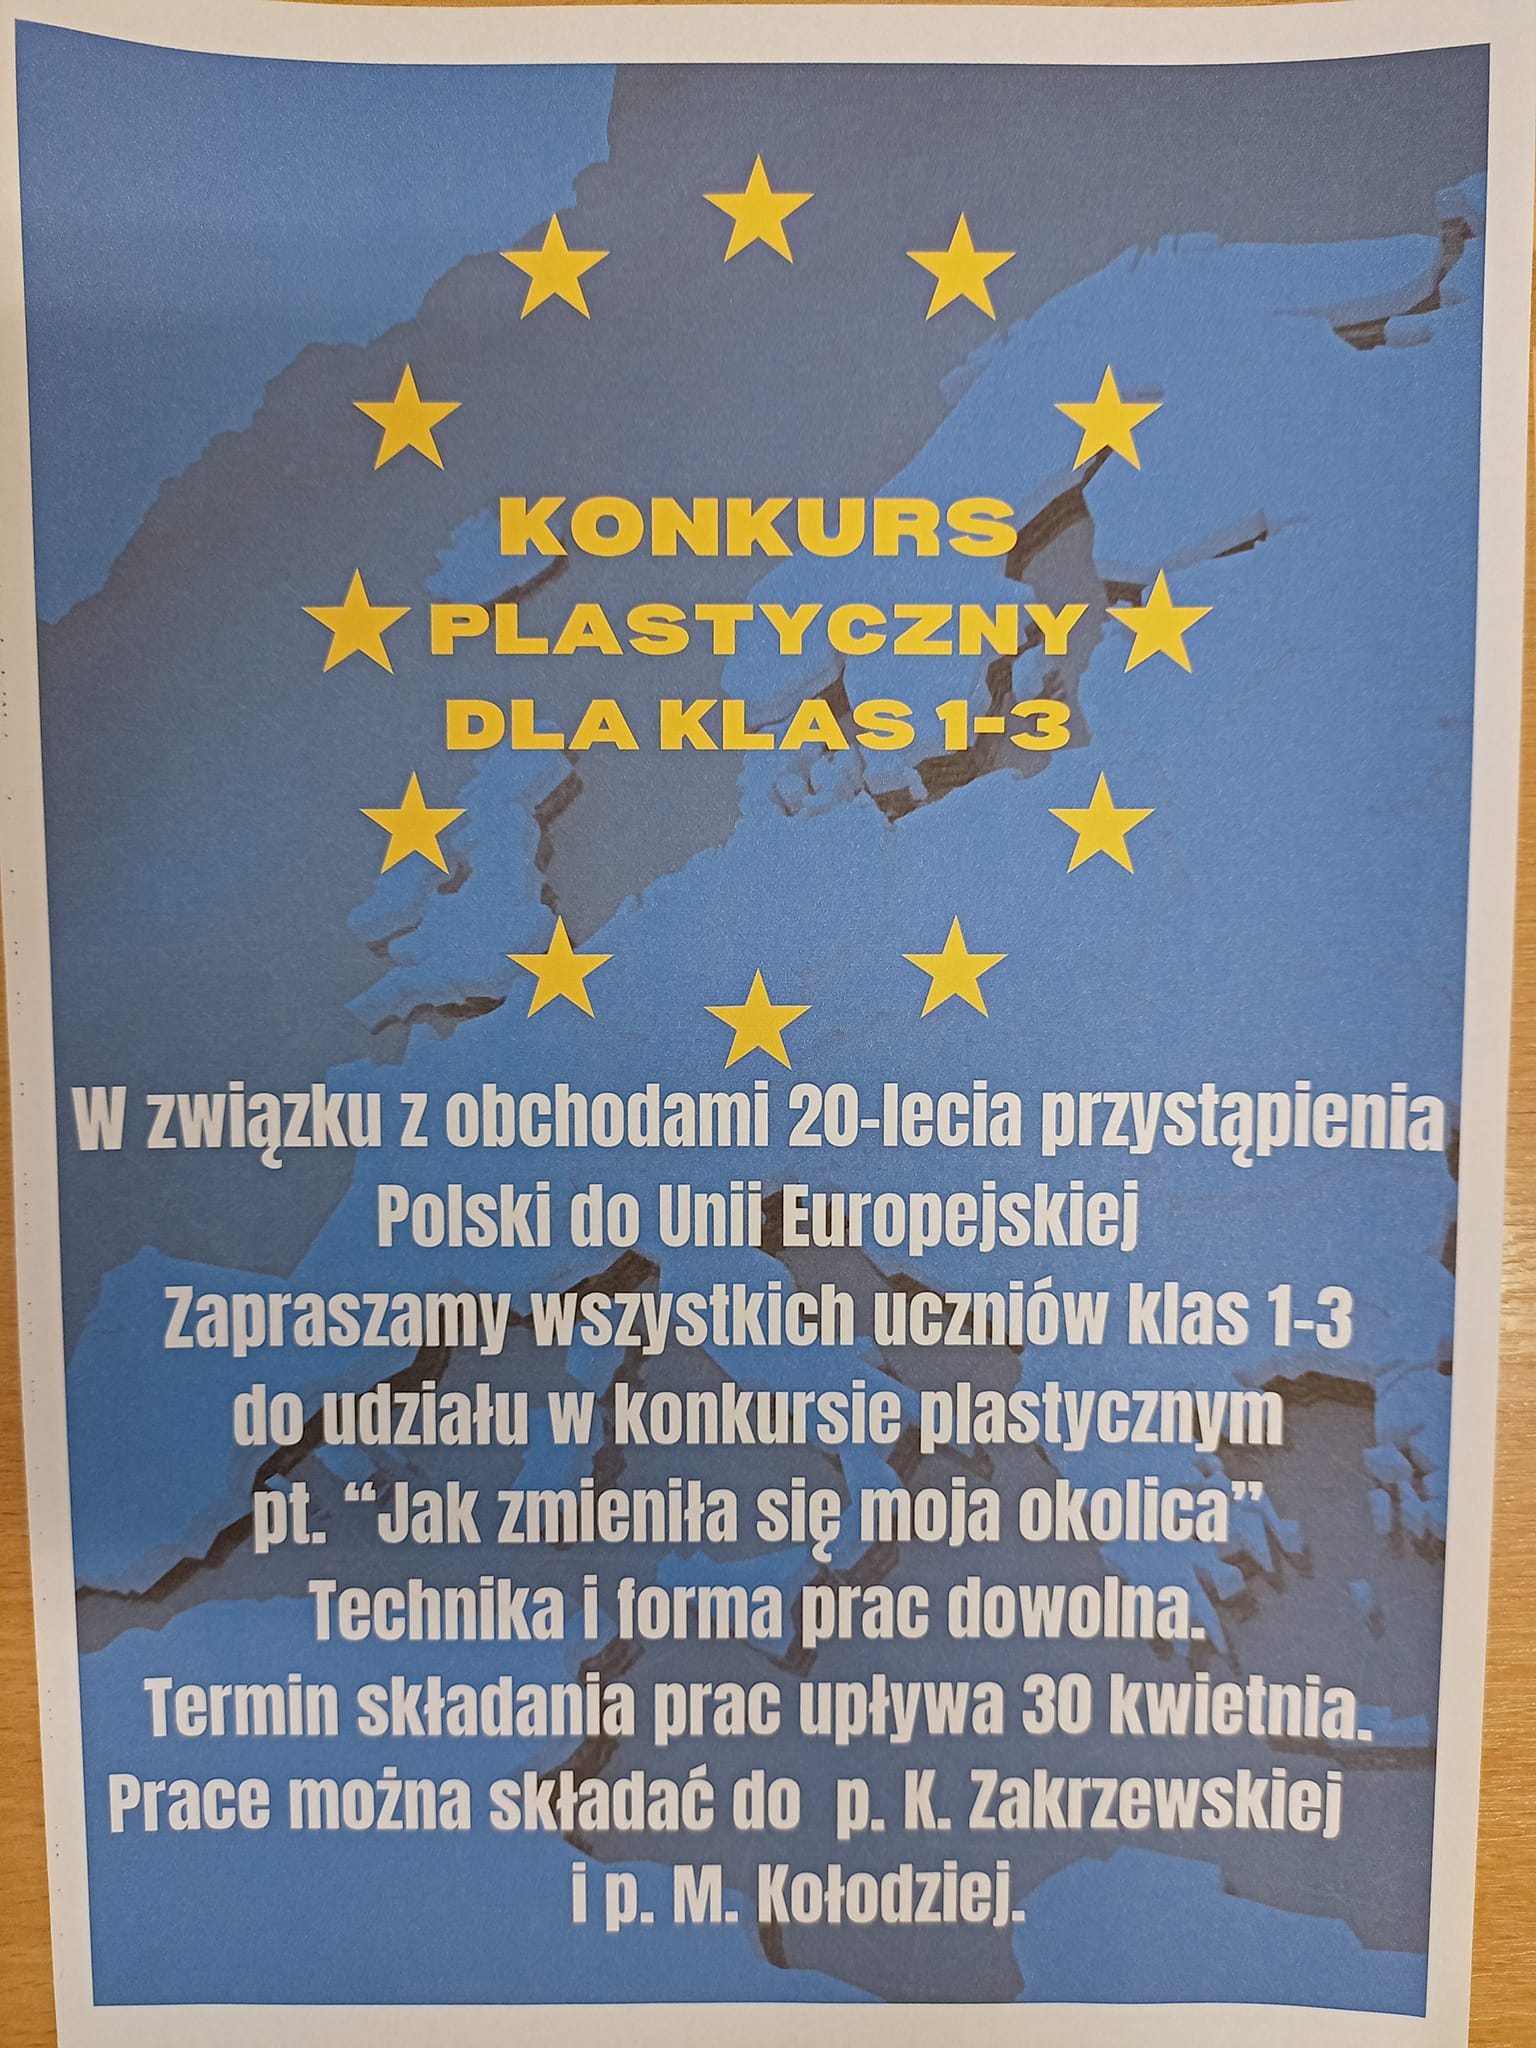 Konkurs plastyczny dla klas 1-3 „20-lecie przystąpienia Polski do Unii Europejskiej